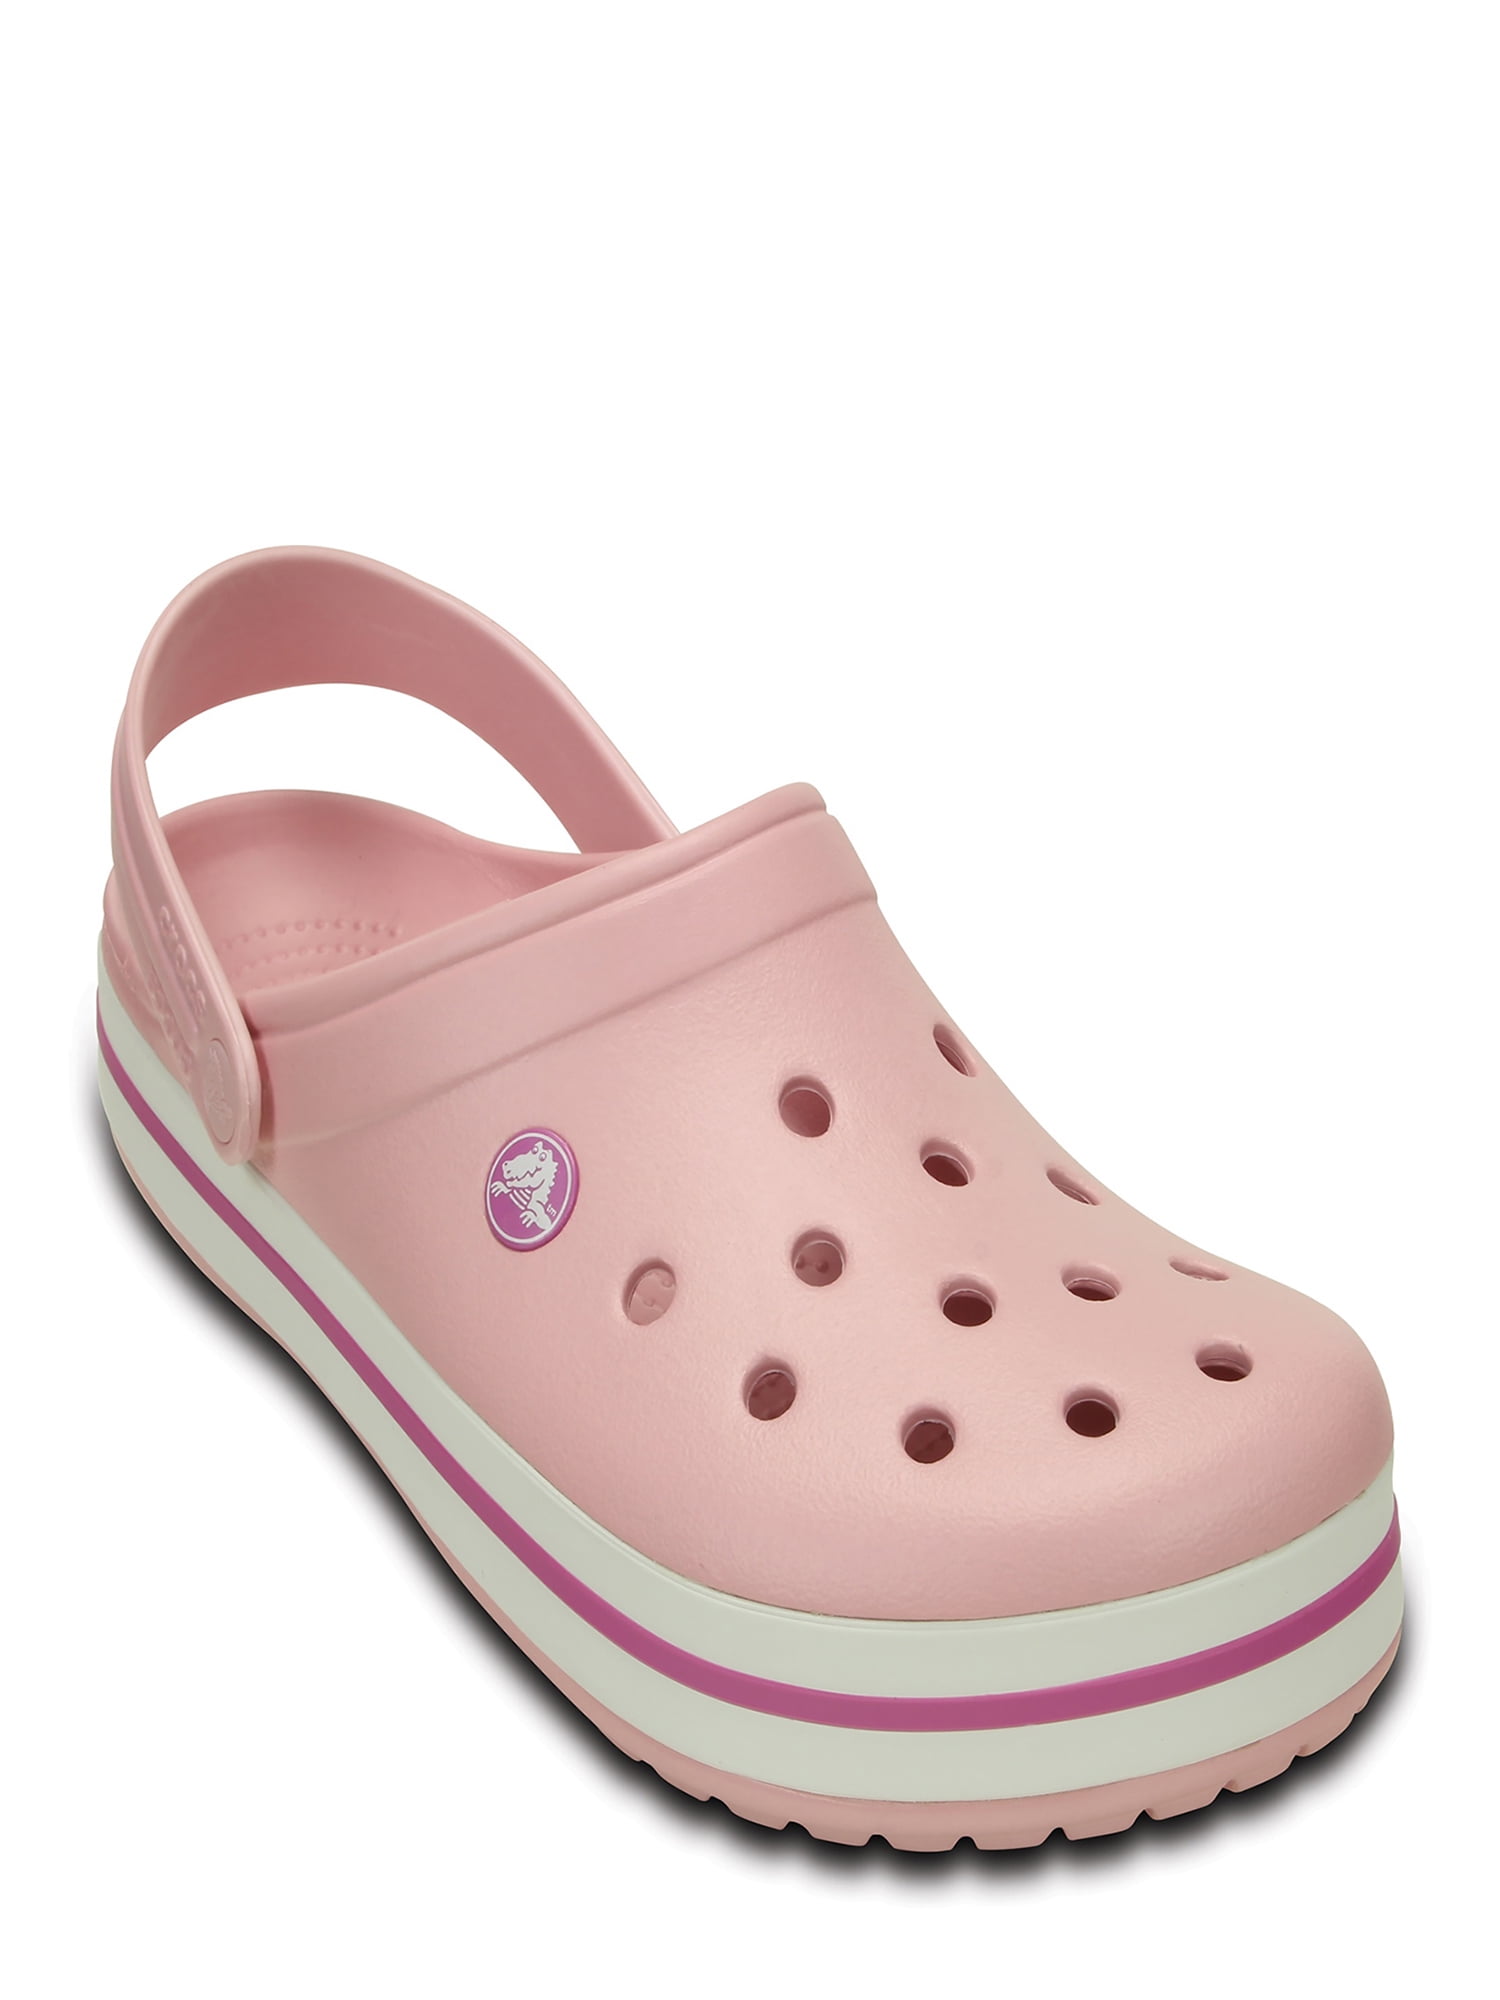 Pink Crocs - Walmart.com